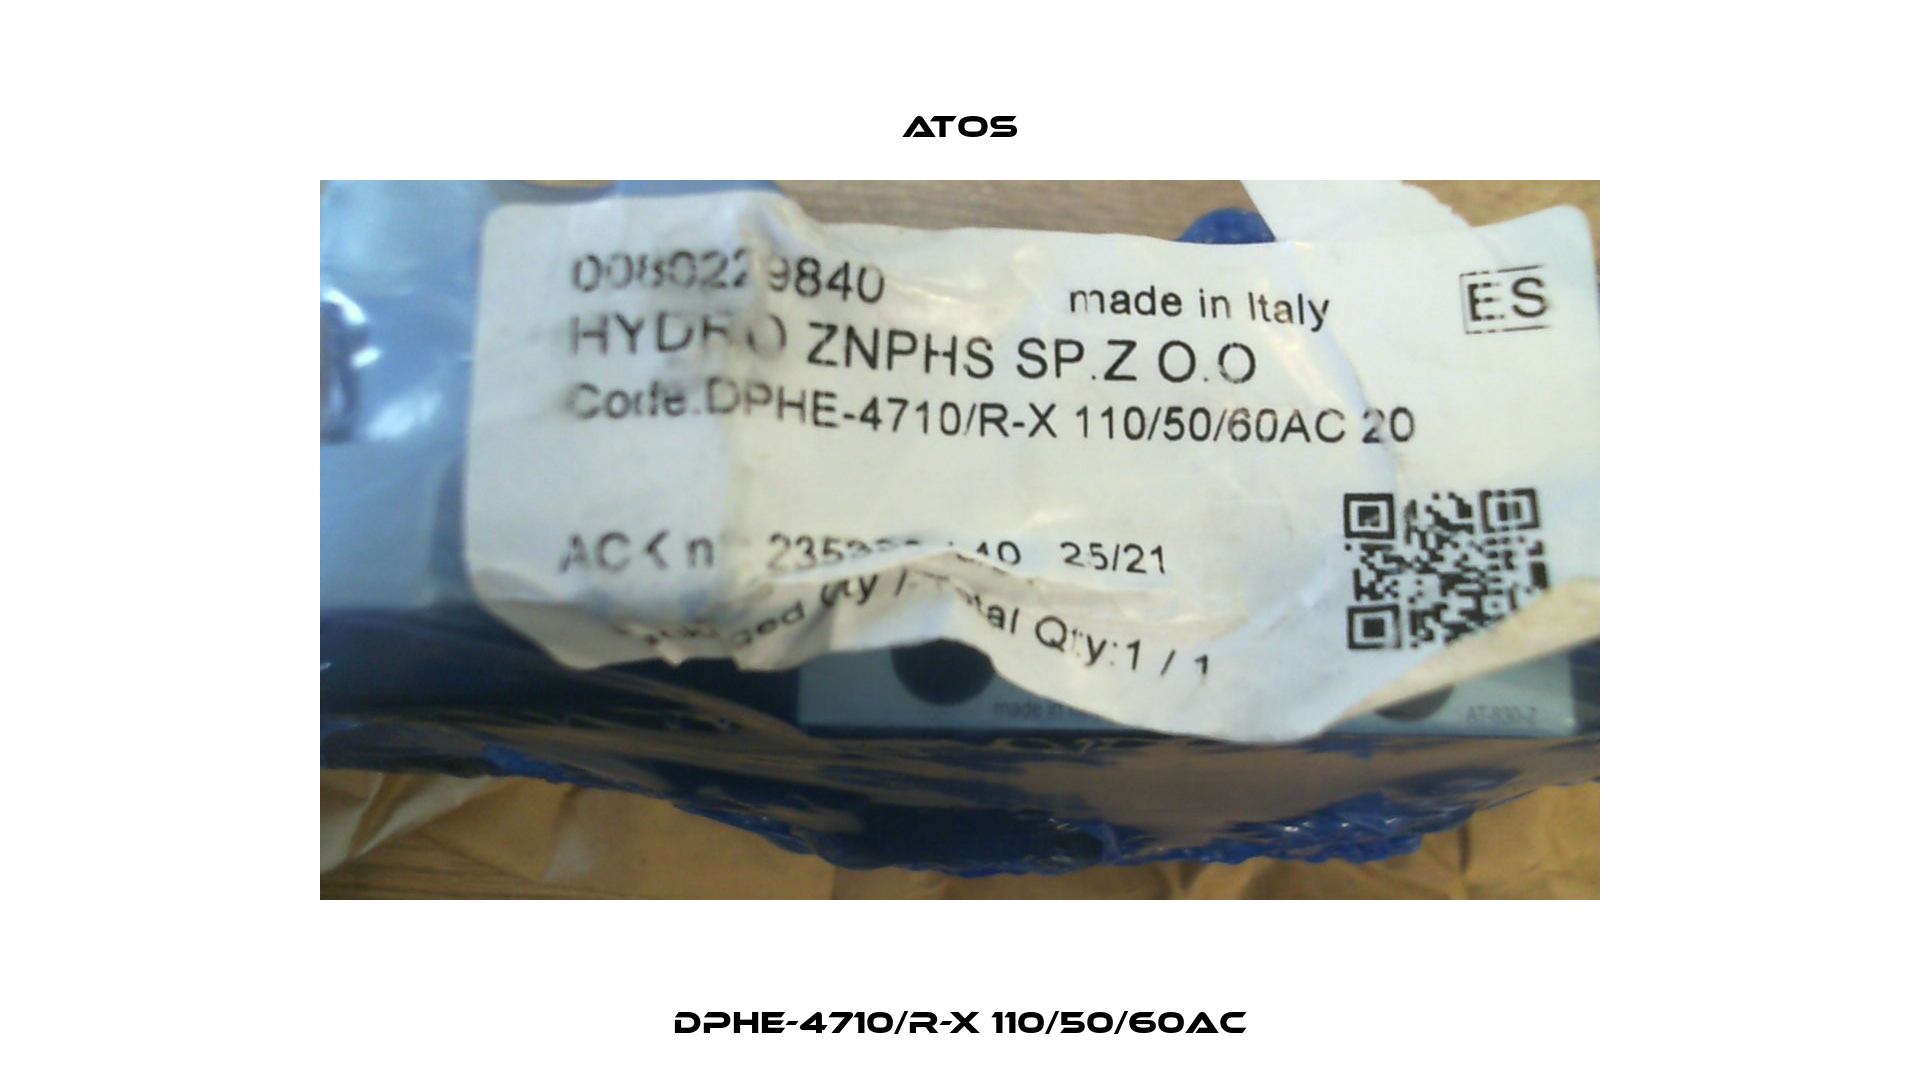 DPHE-4710/R-X 110/50/60AC Atos